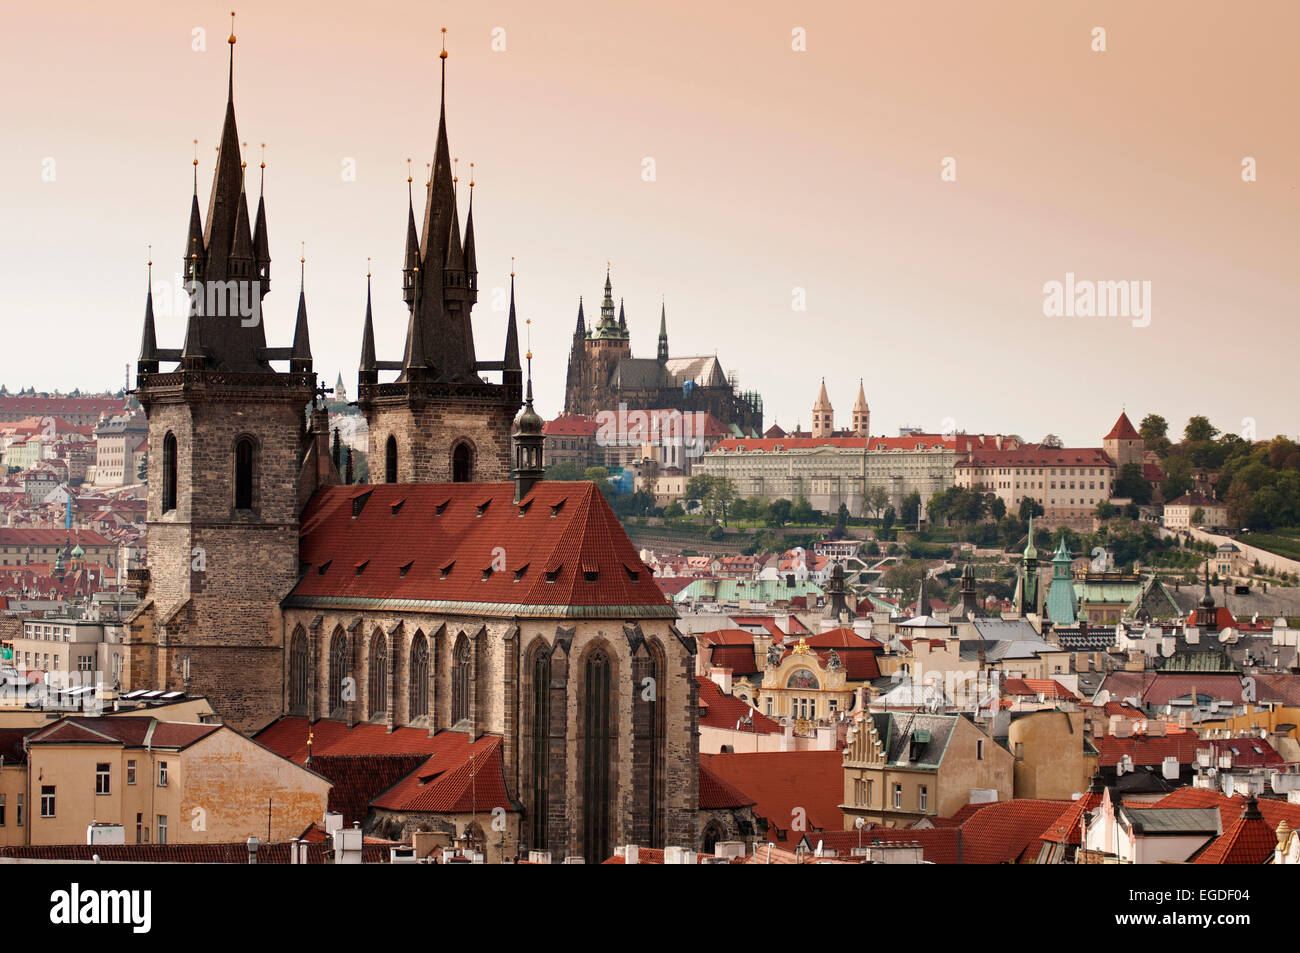 Vue sur l'église sur l'Altstadtplatz au Château de Prague et cathédrale Saint-vitus, Prague, République Tchèque, Europe Banque D'Images